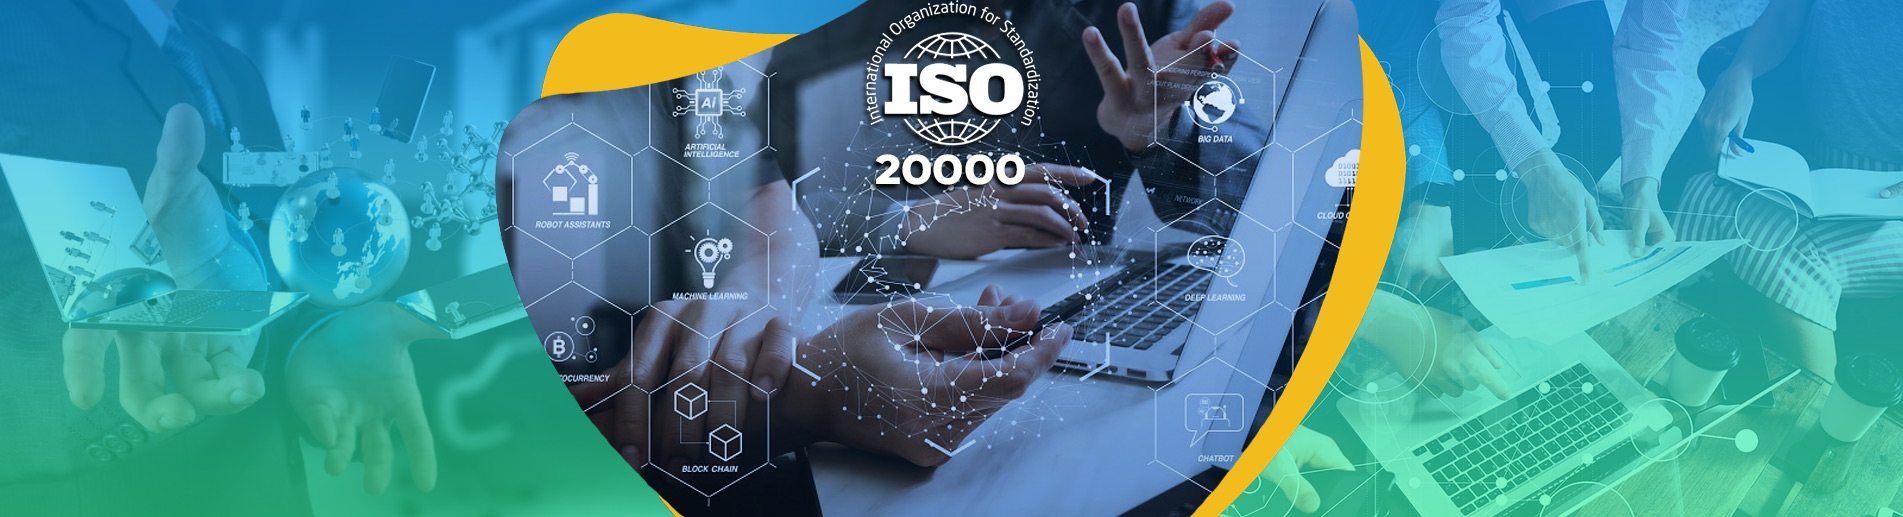 ISO 20000 Bilgi Teknolojileri Hizmet Yönetim Sistemi